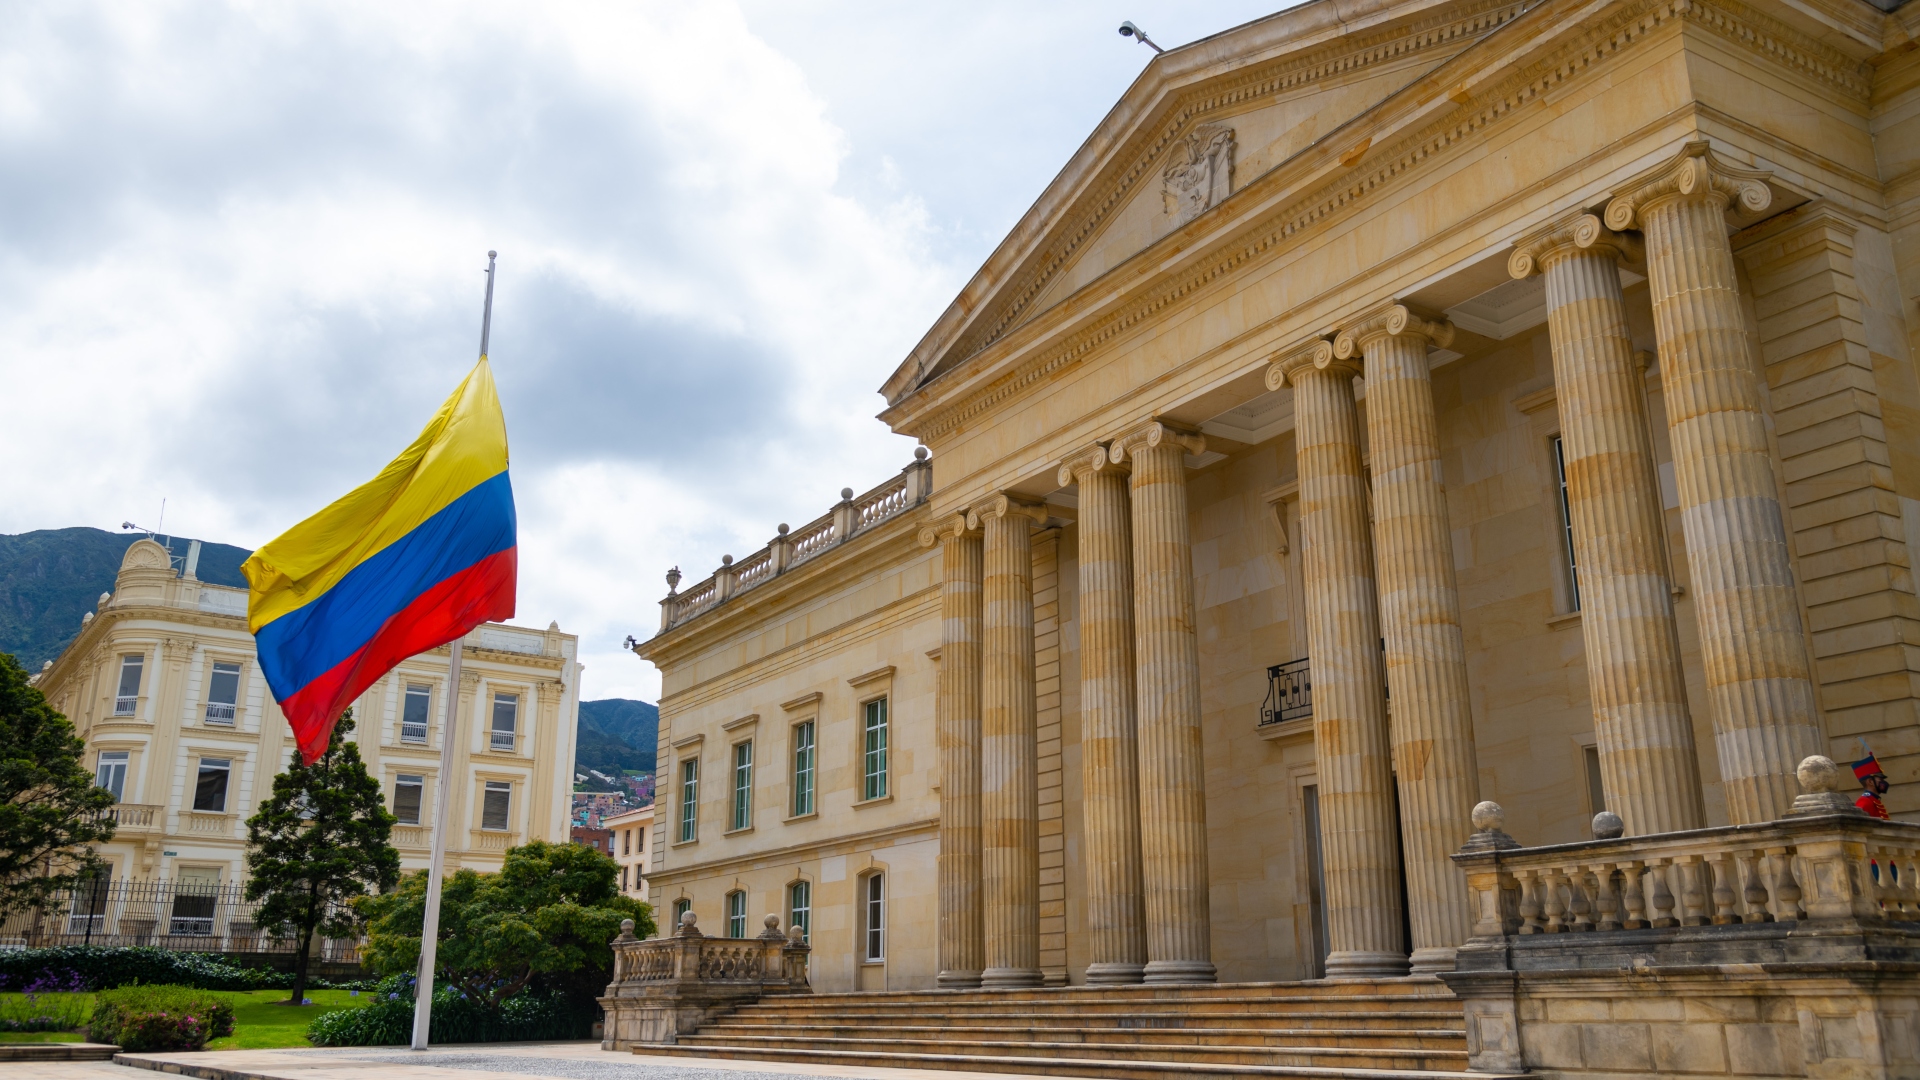 La foto fue dada a conocer por el gabinete del presidente electo, Gustavo Petro, en la mañana de este domingo 7 de agosto, día que se realizará la posesión del nuevo presidente de Colombia para el periodo 2022 - 2026.